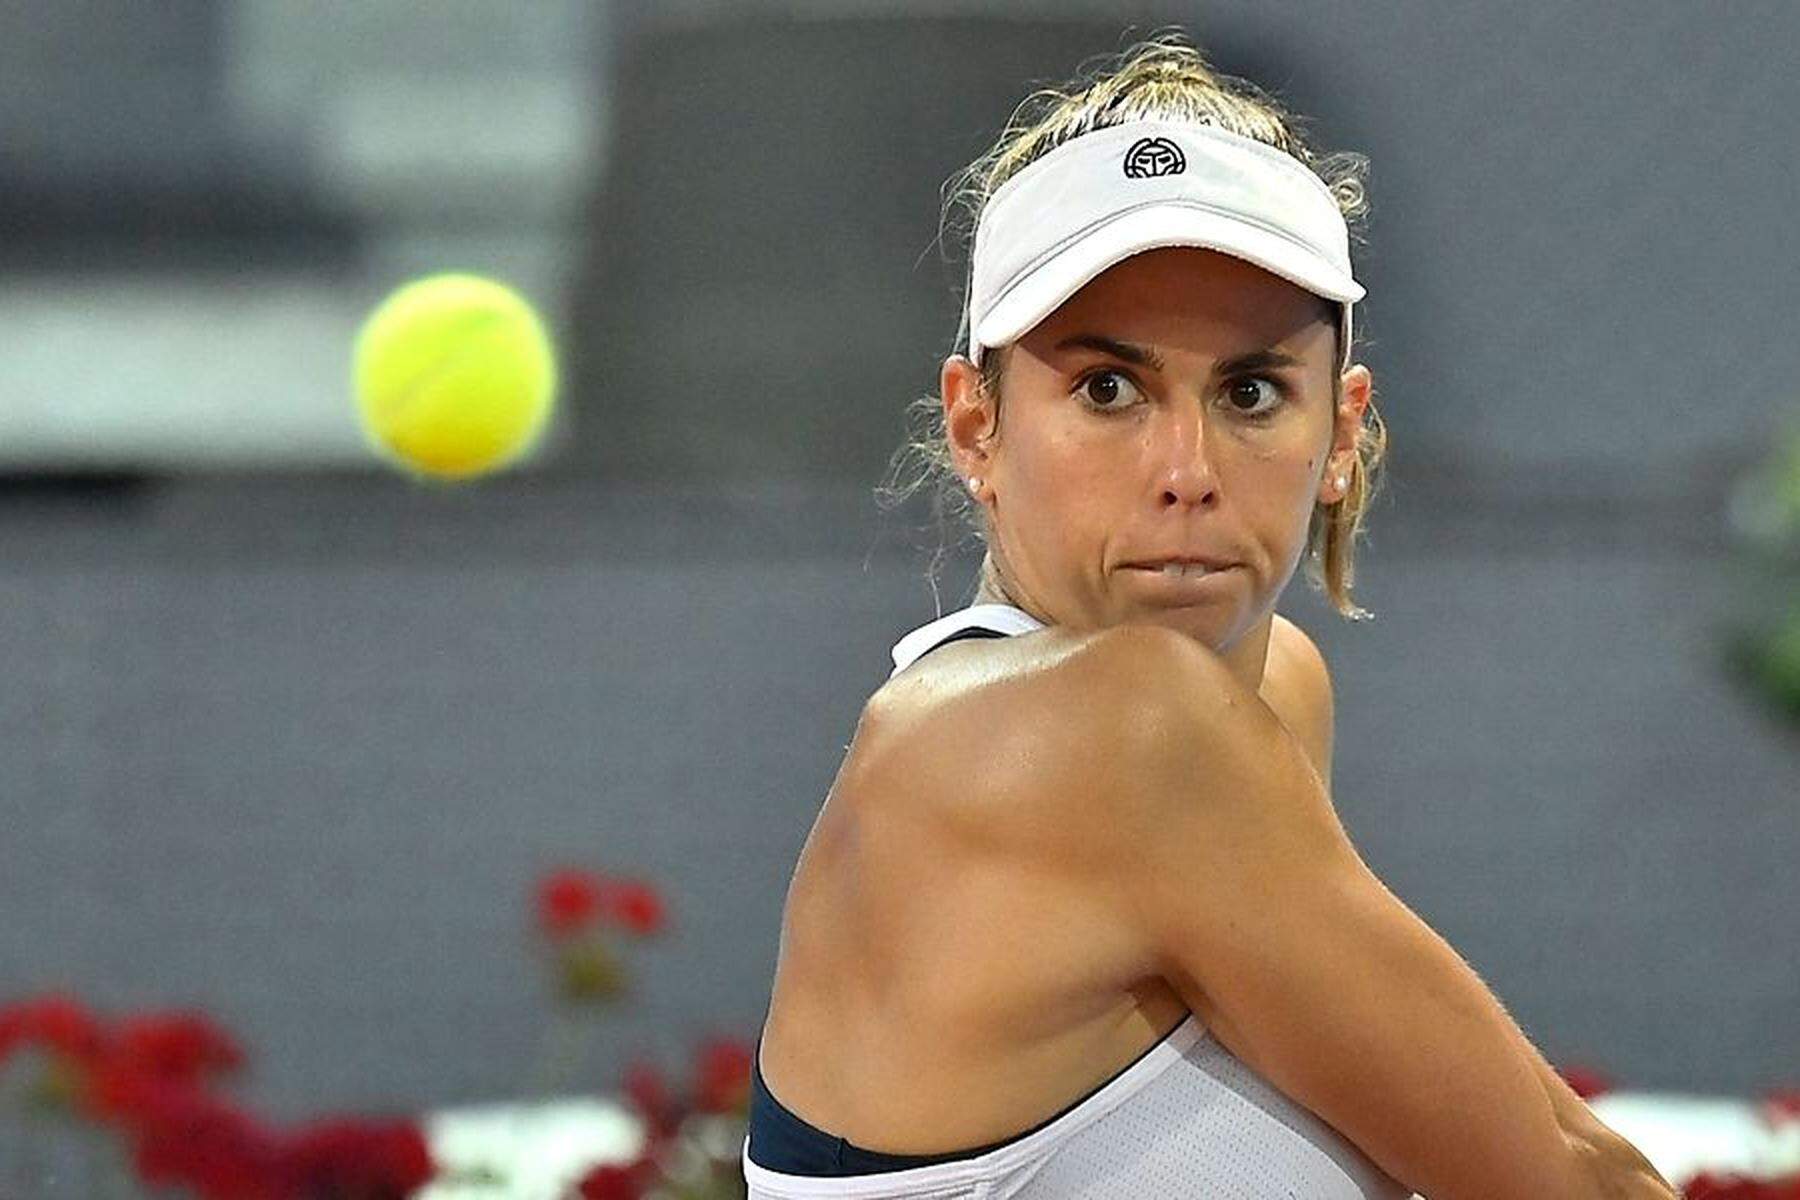 French Open in Paris Julia Grabher mit Machtdemonstration, Coco Gauff als nächste Gegnerin